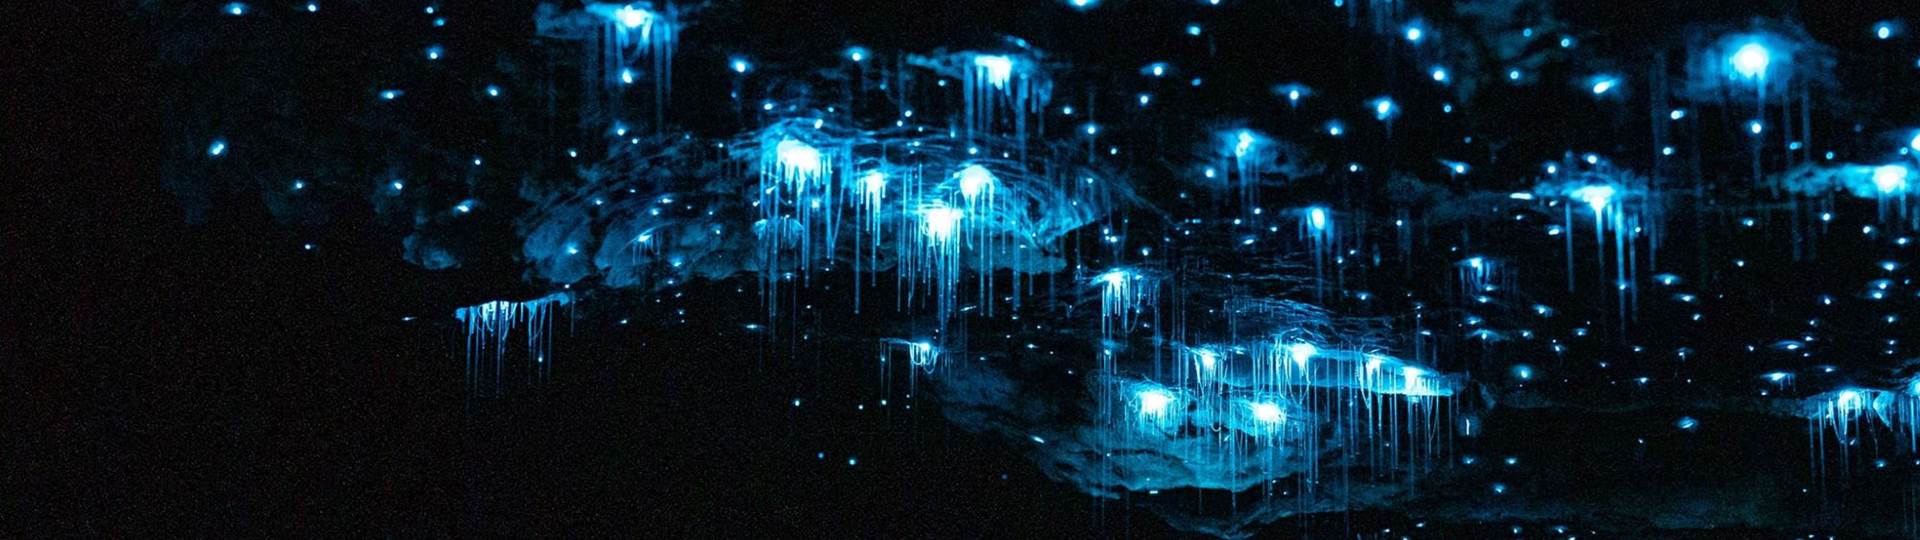 Glowworms in the Te Anau Glowworm Caves